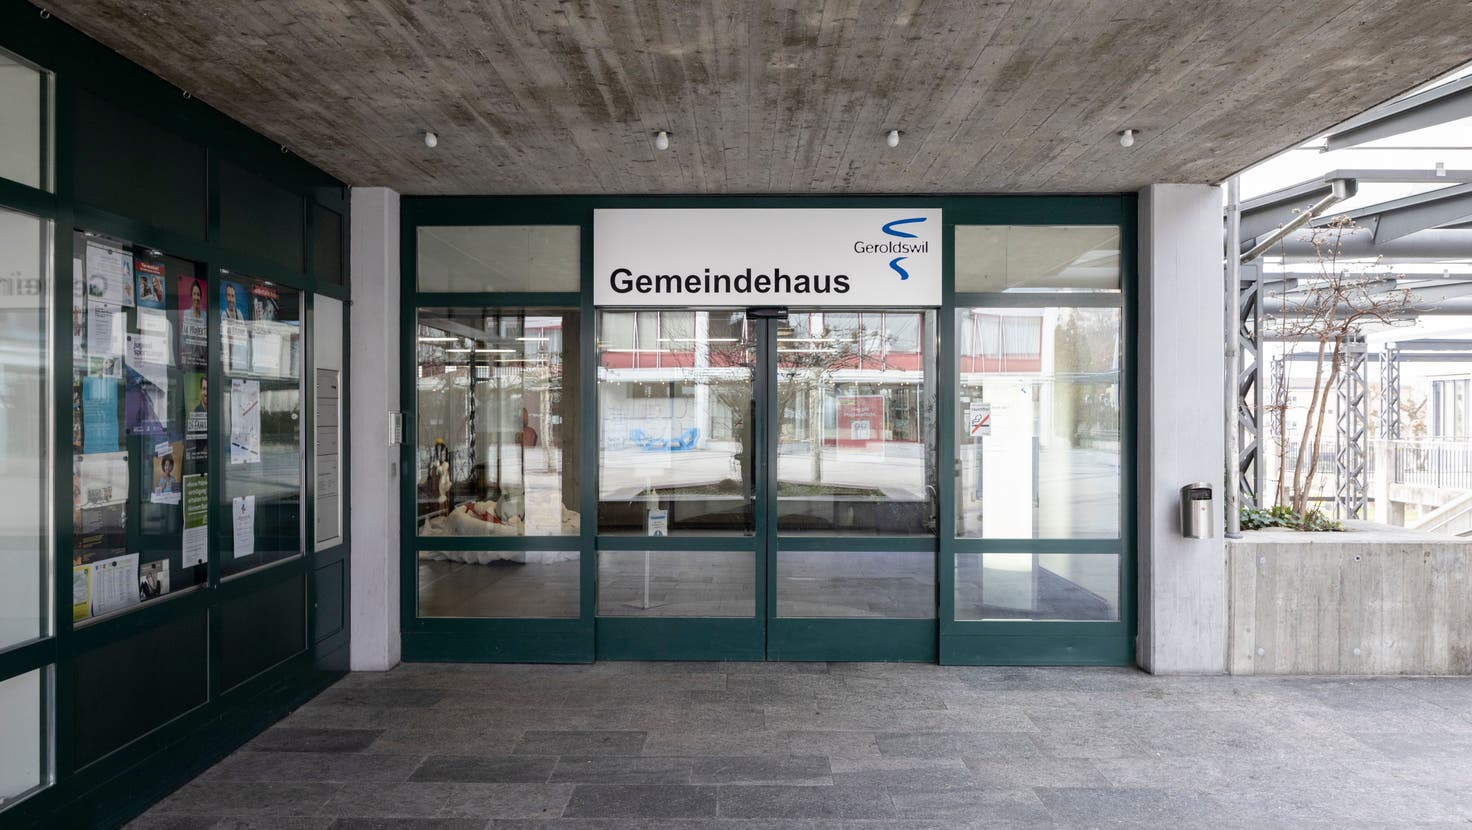 Der Eingang zum Gemeindehaus Geroldswil: Hier drin ist der Fehler passiert, der zum Flyer-Fiasko führte. (Bild: Severin Bigler)